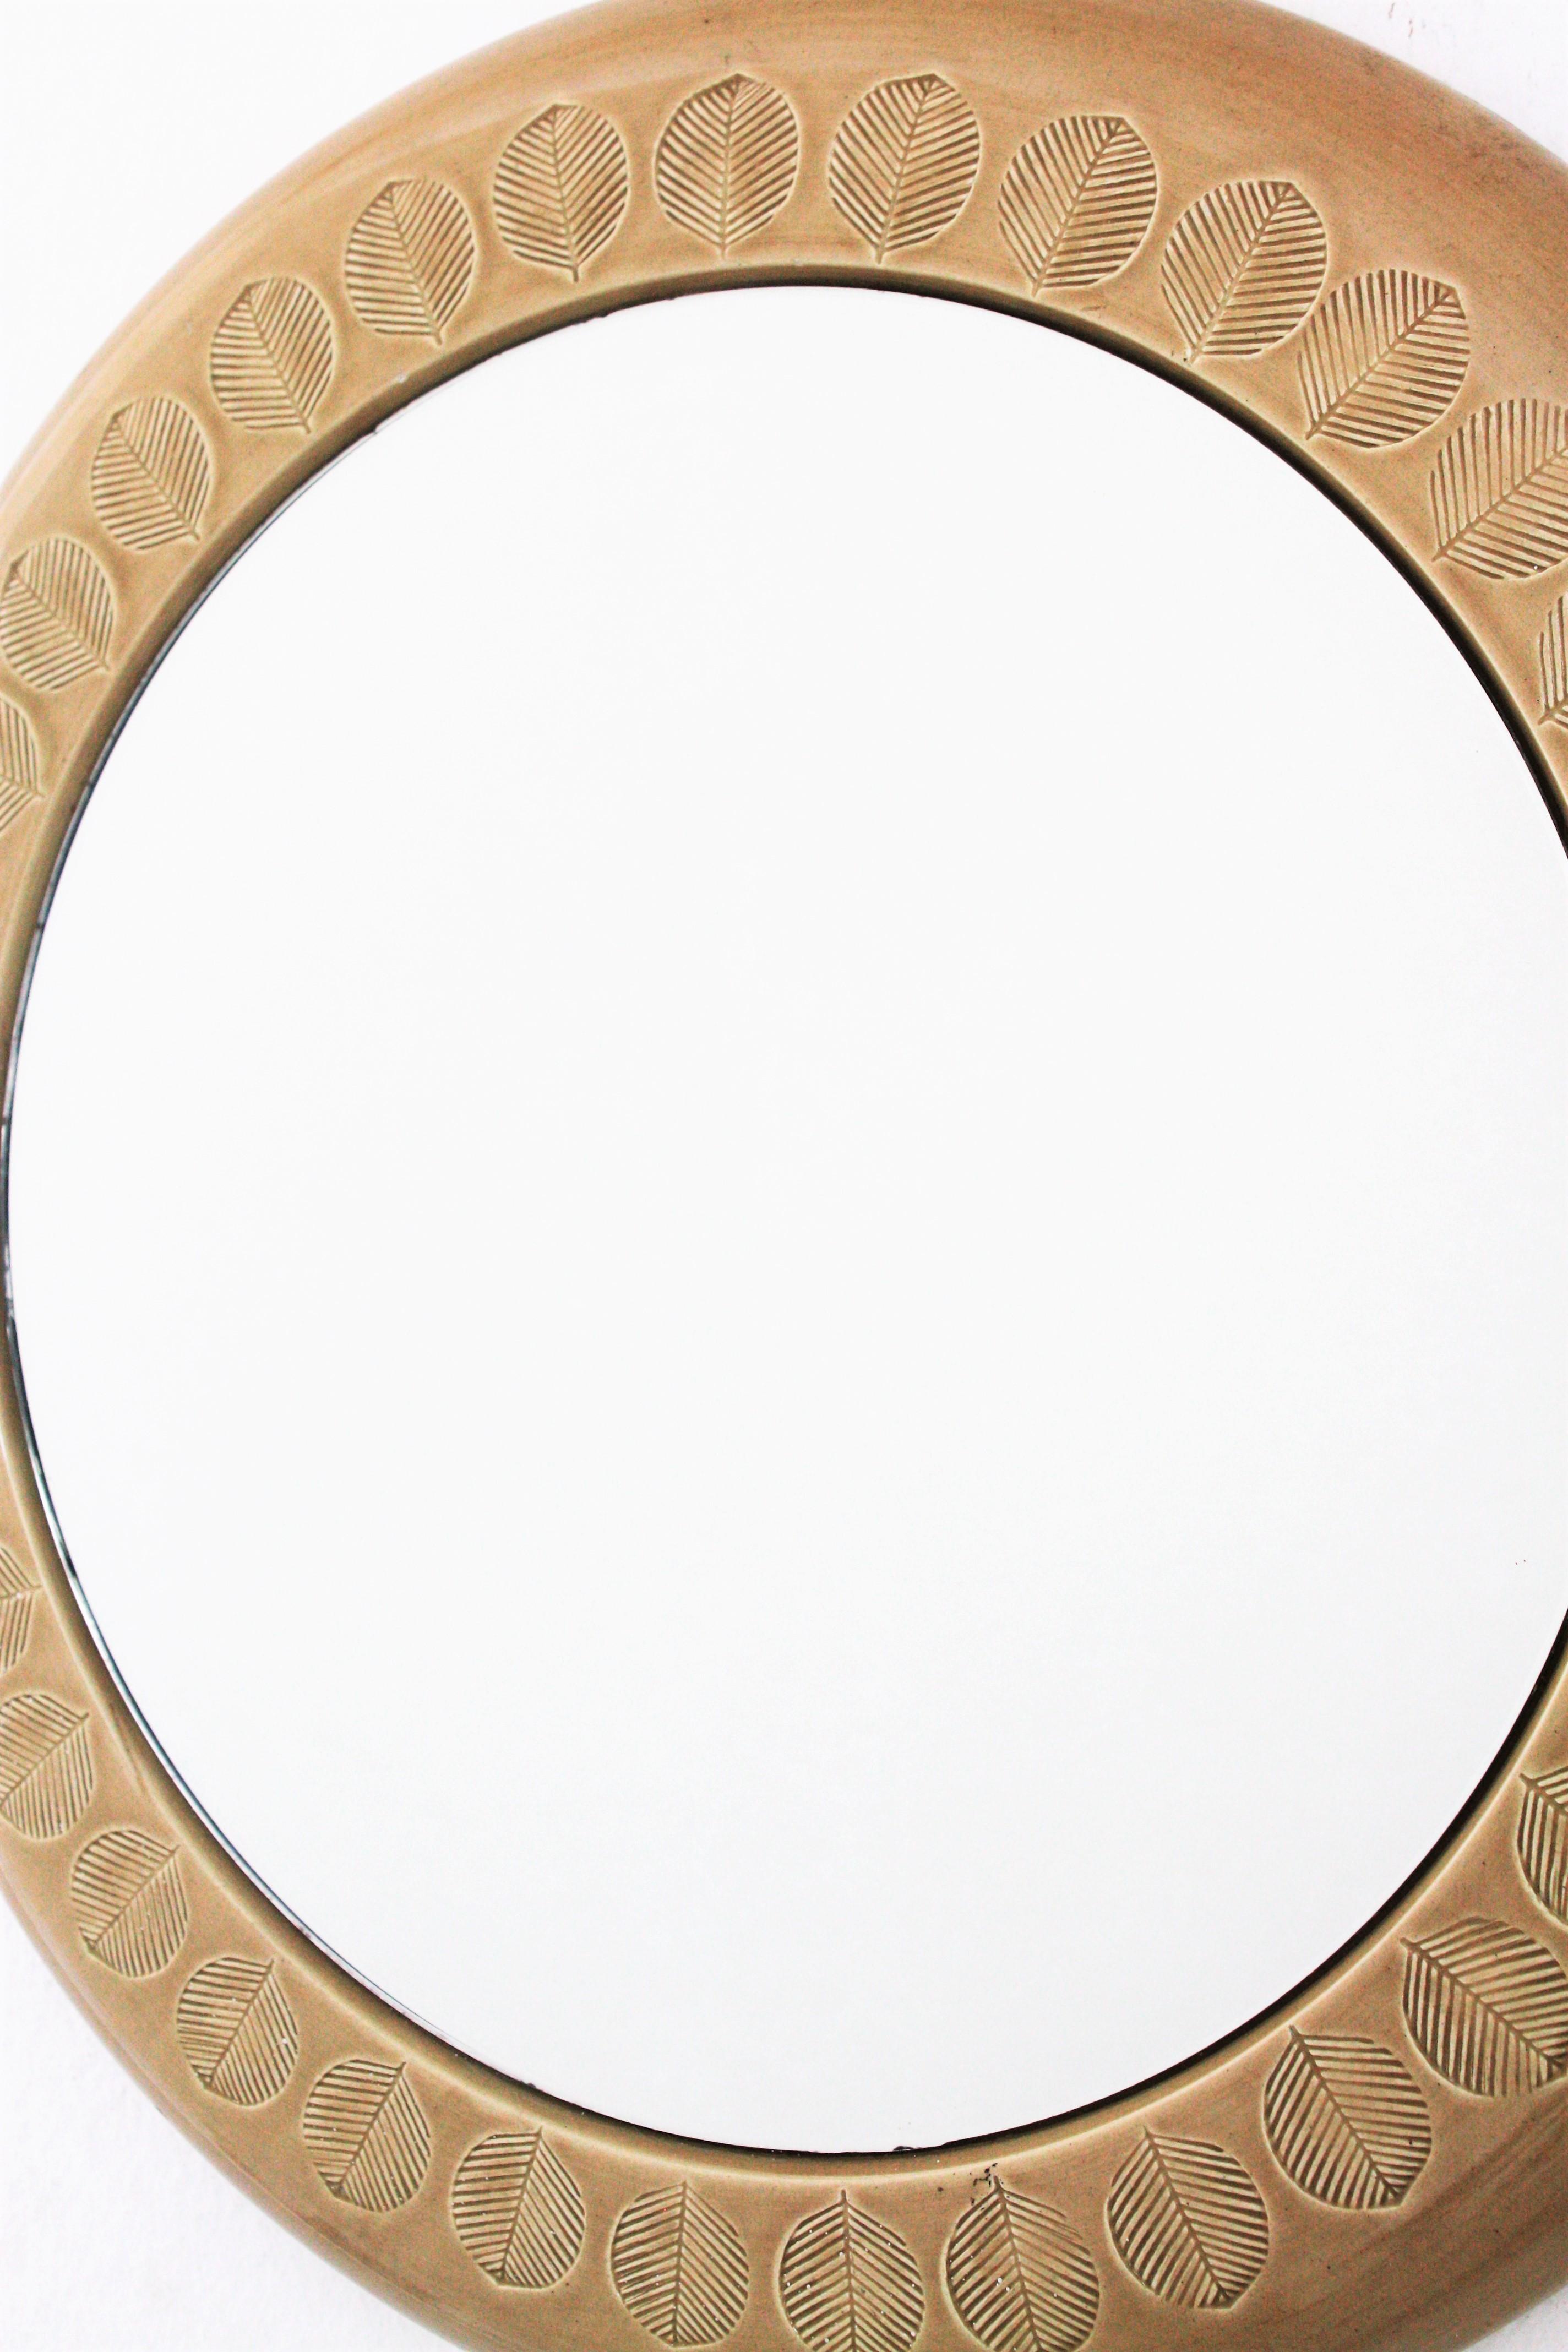 Pottery Aldo Londi Bitossi Beige Glazed Ceramic Round Wall Mirror with Leaf Motifs For Sale